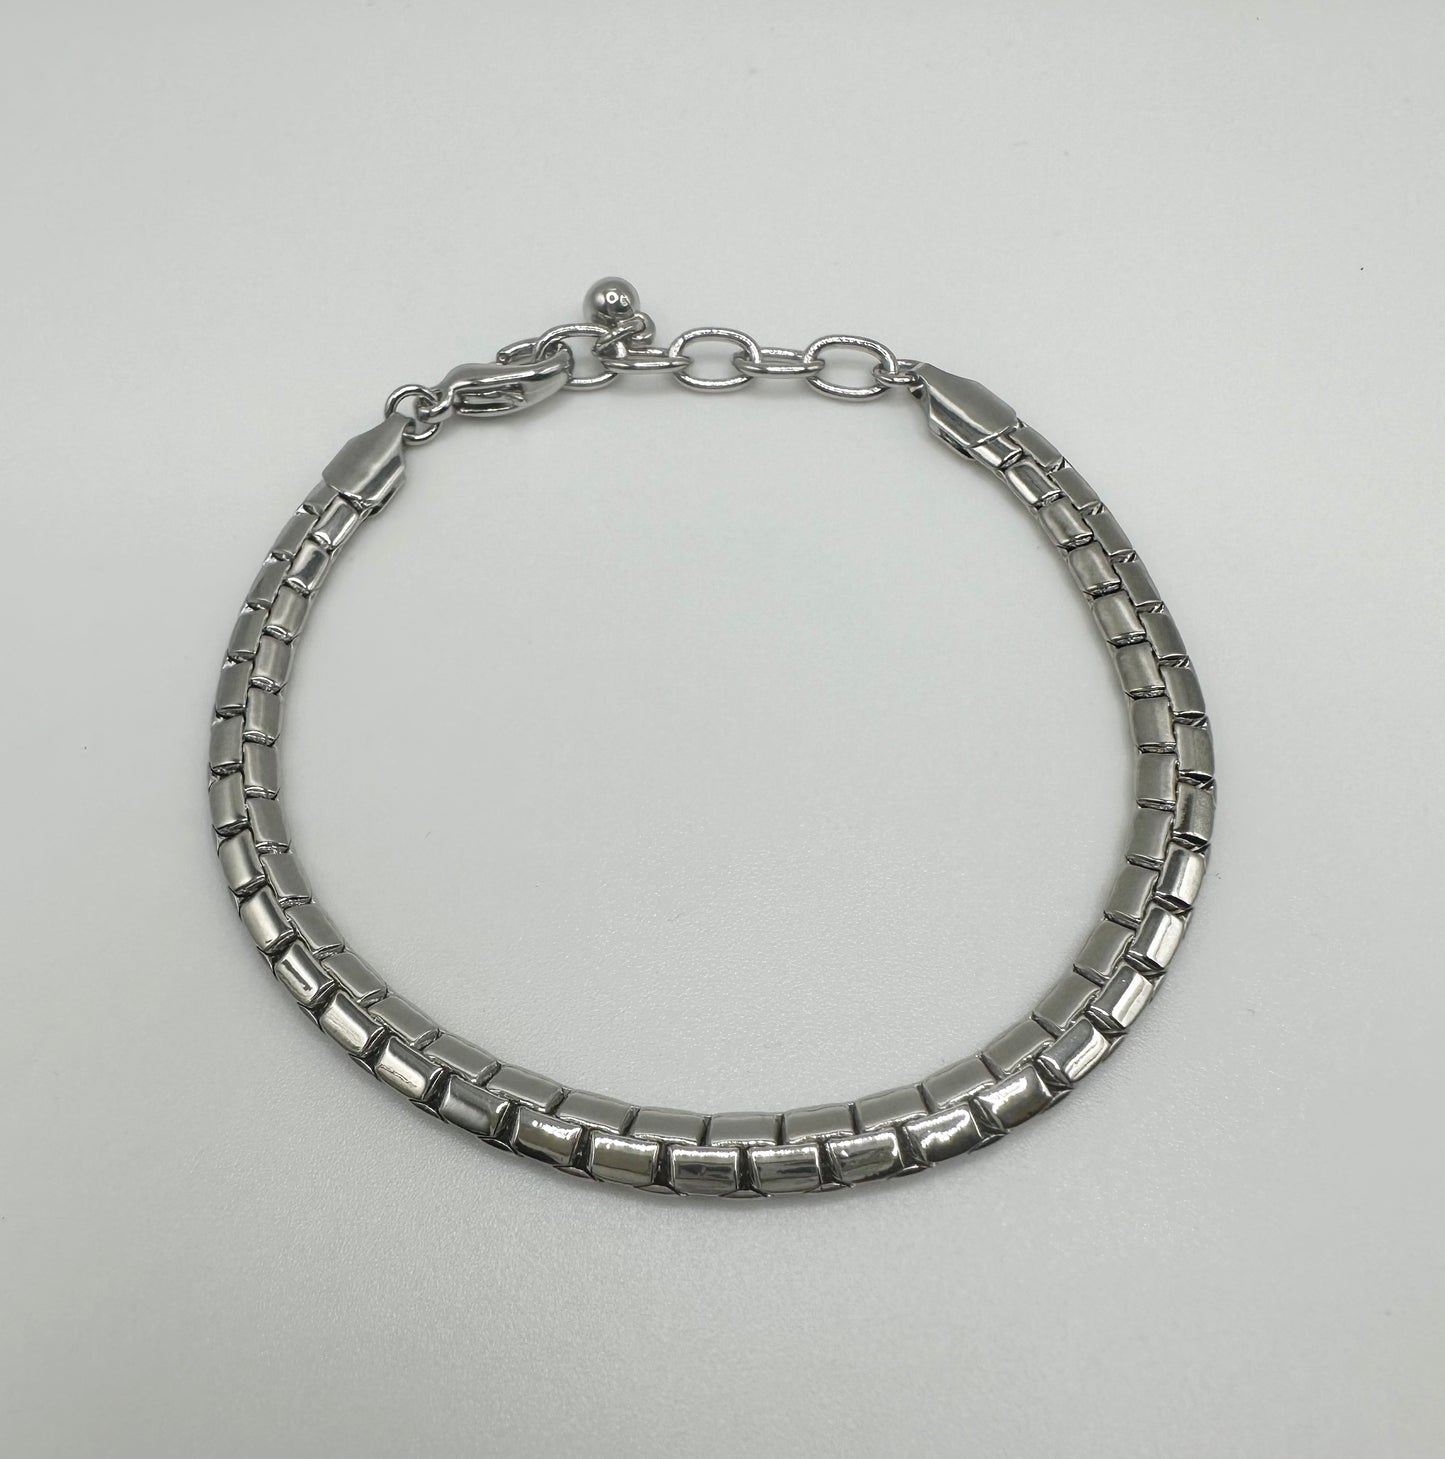 Chain Bracelet - Two Colors